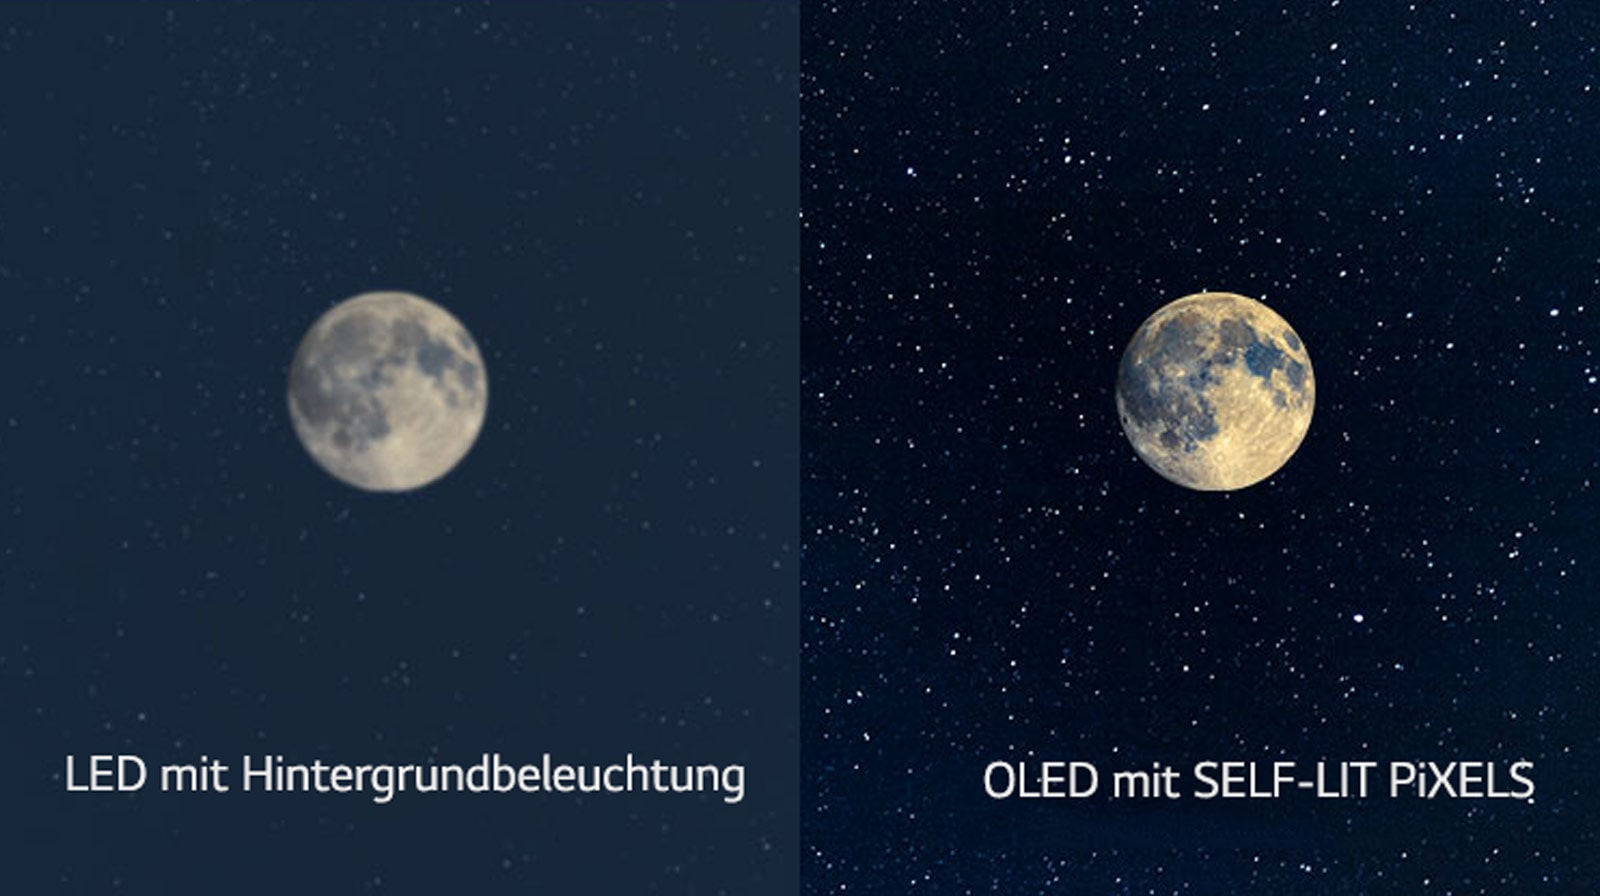 Una rappresentazione della luna, un LED è sul lato sinistro e mostra un nero insufficiente, mentre il nero più profondo può essere visto sull'OLED sul lato destro (guarda il video)